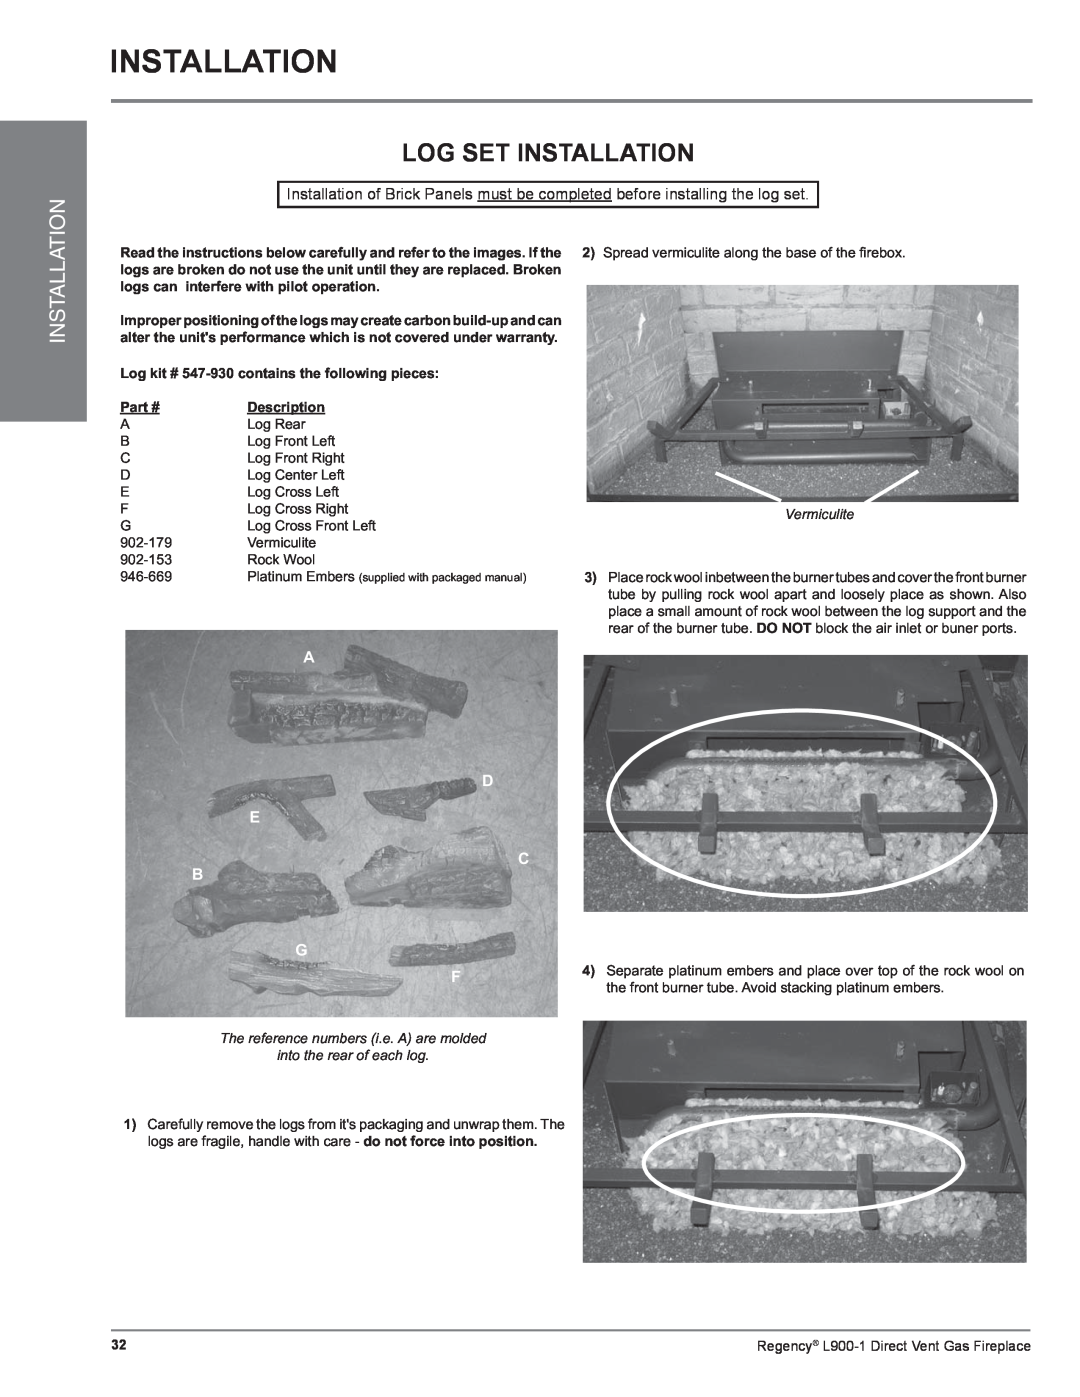 Regency L900-1 Log Set Installation, A D E C B G F, Log kit # 547-930contains the following pieces, Description 